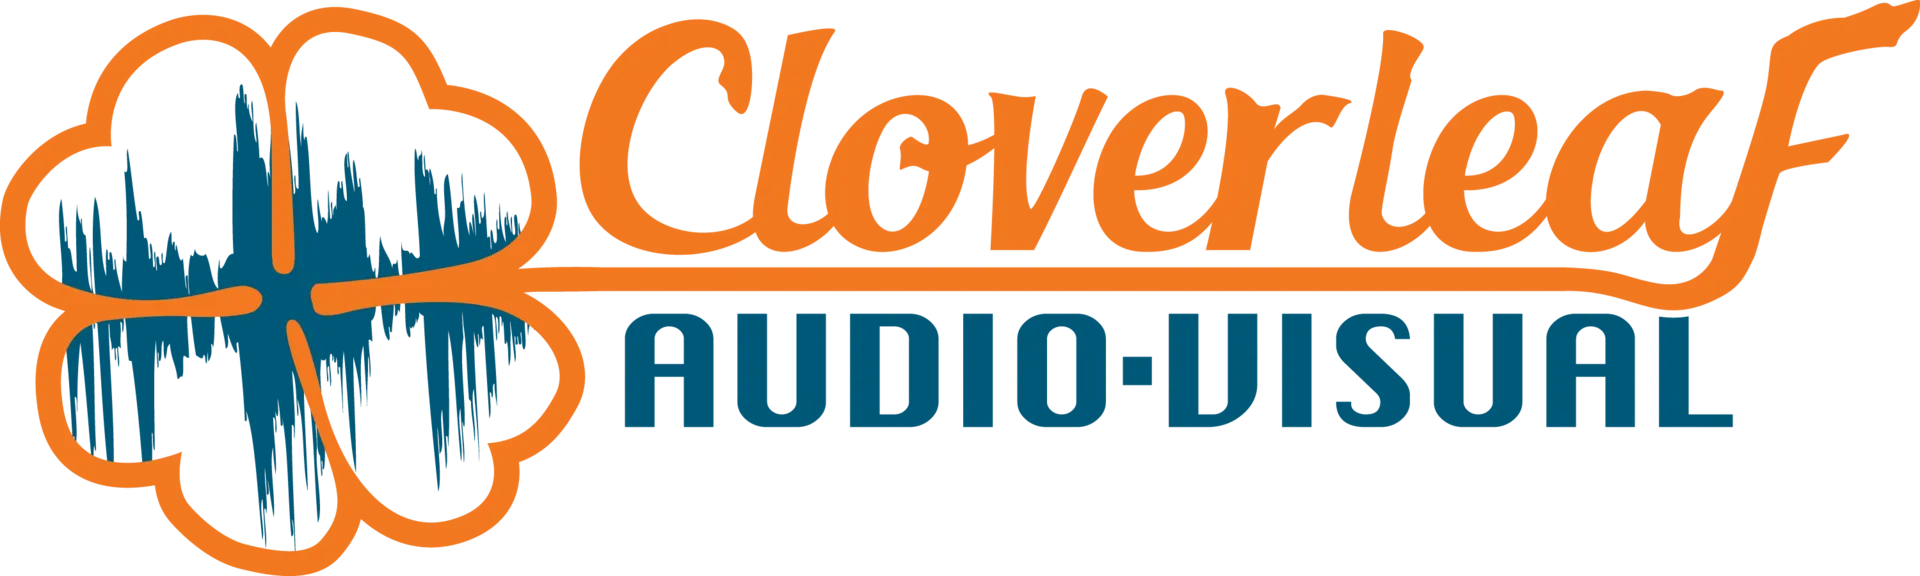 Cloverleaf Audio-Visual